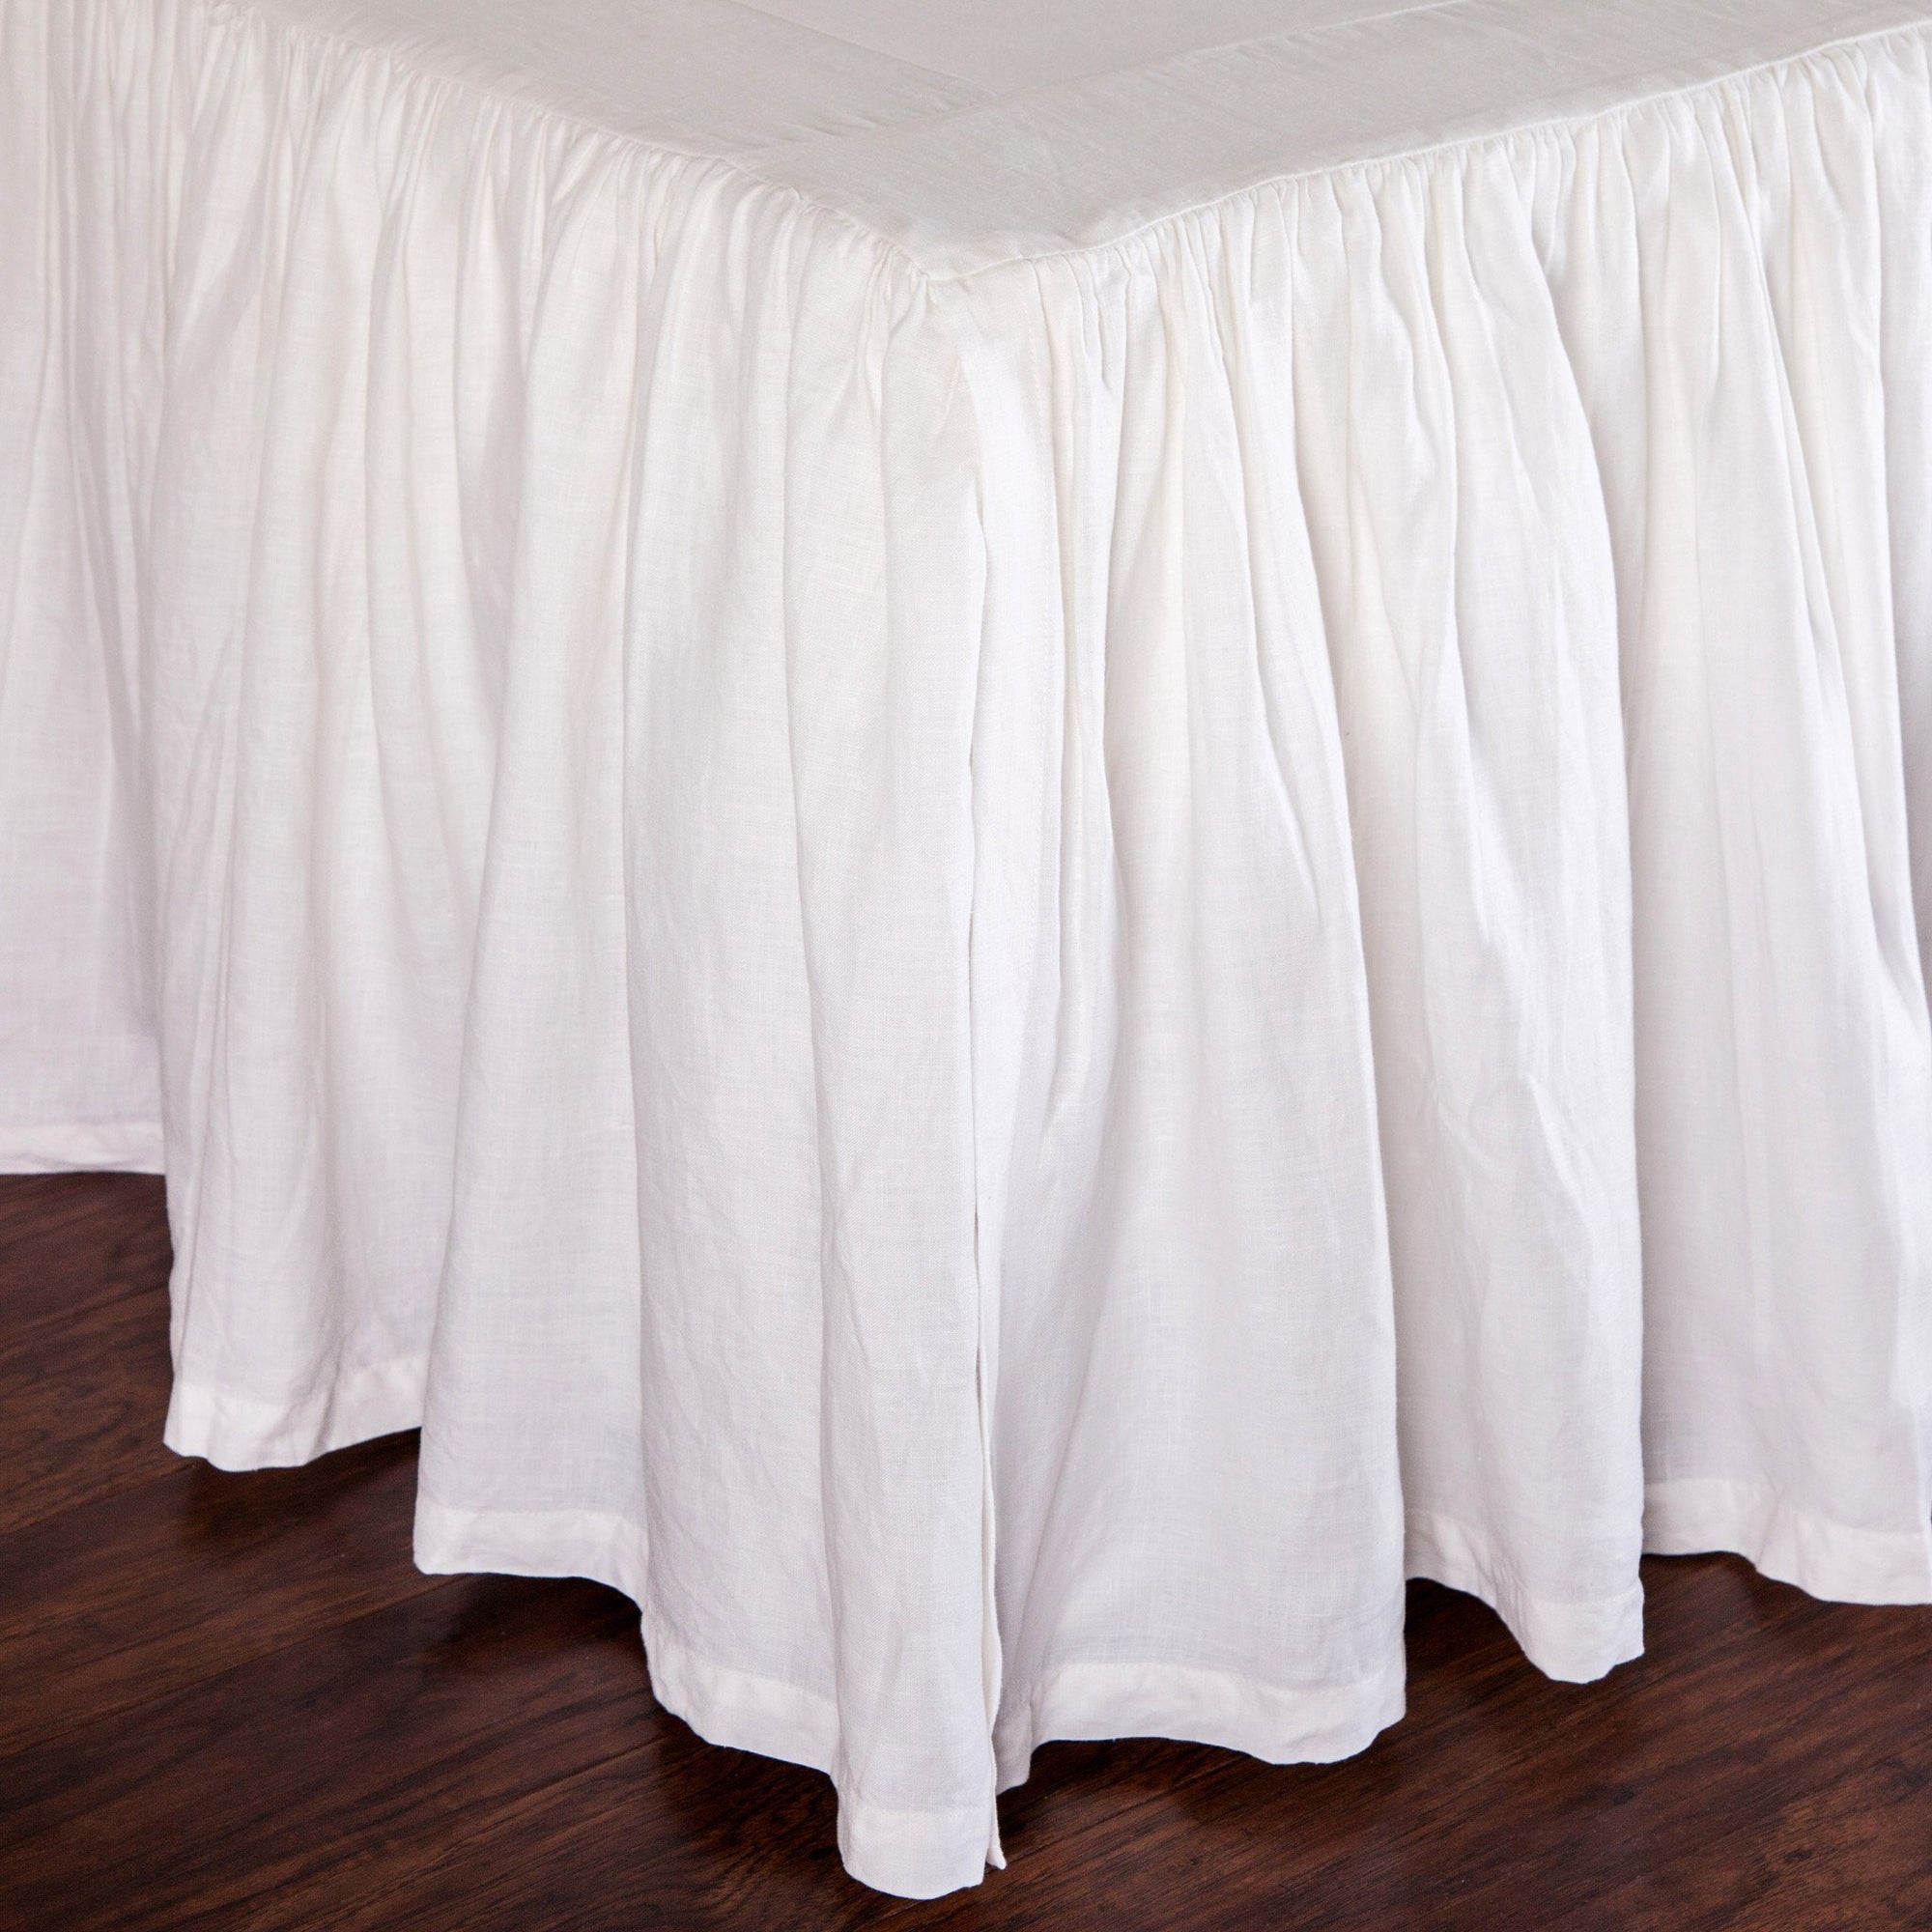 Fig Linens - Pom Pom at Home Bedding - White gathered bed skirt